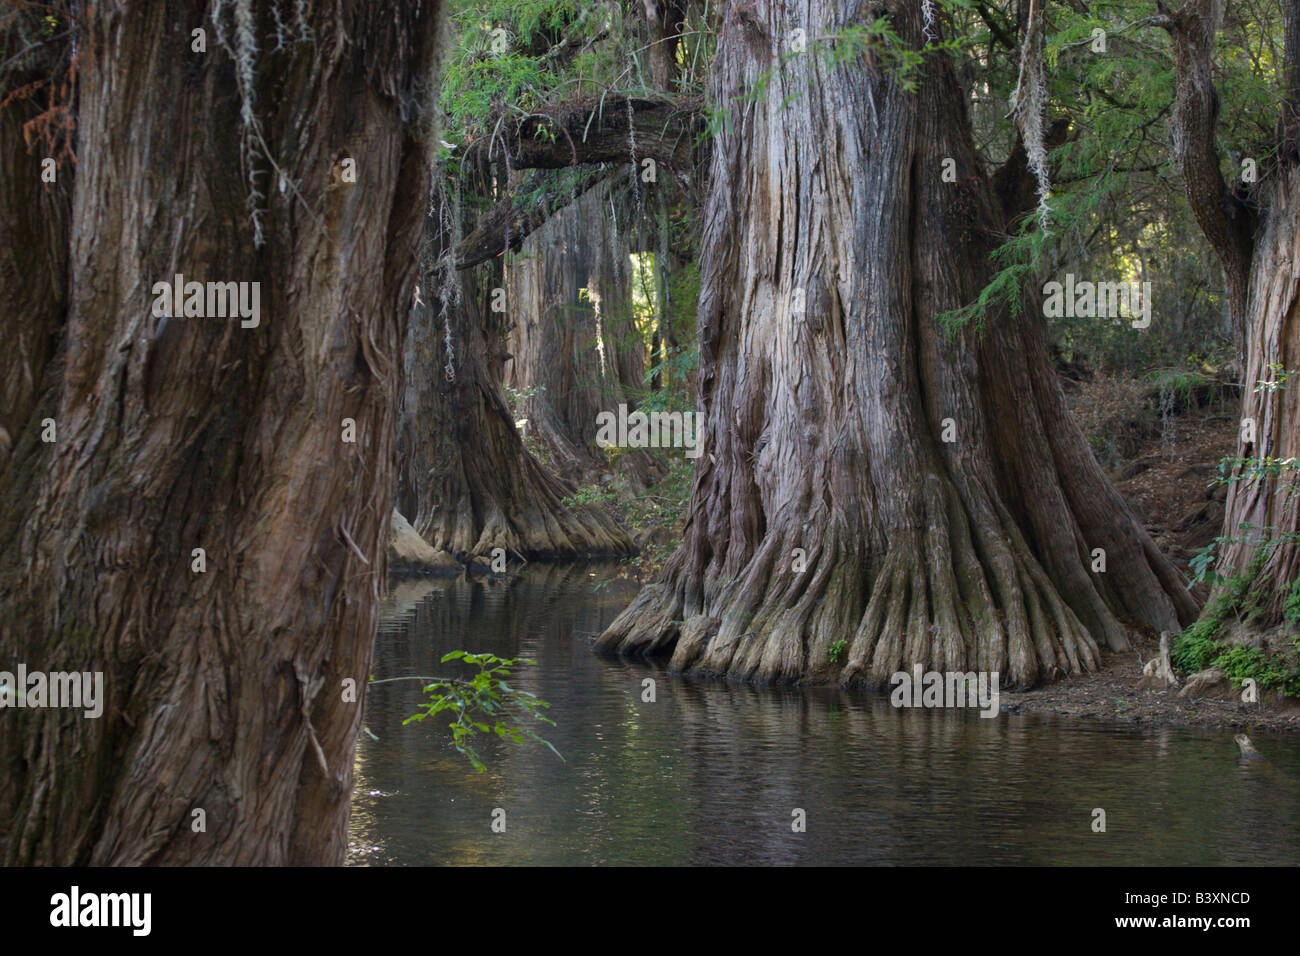 pantano swamp tree Mexico Stock Photo